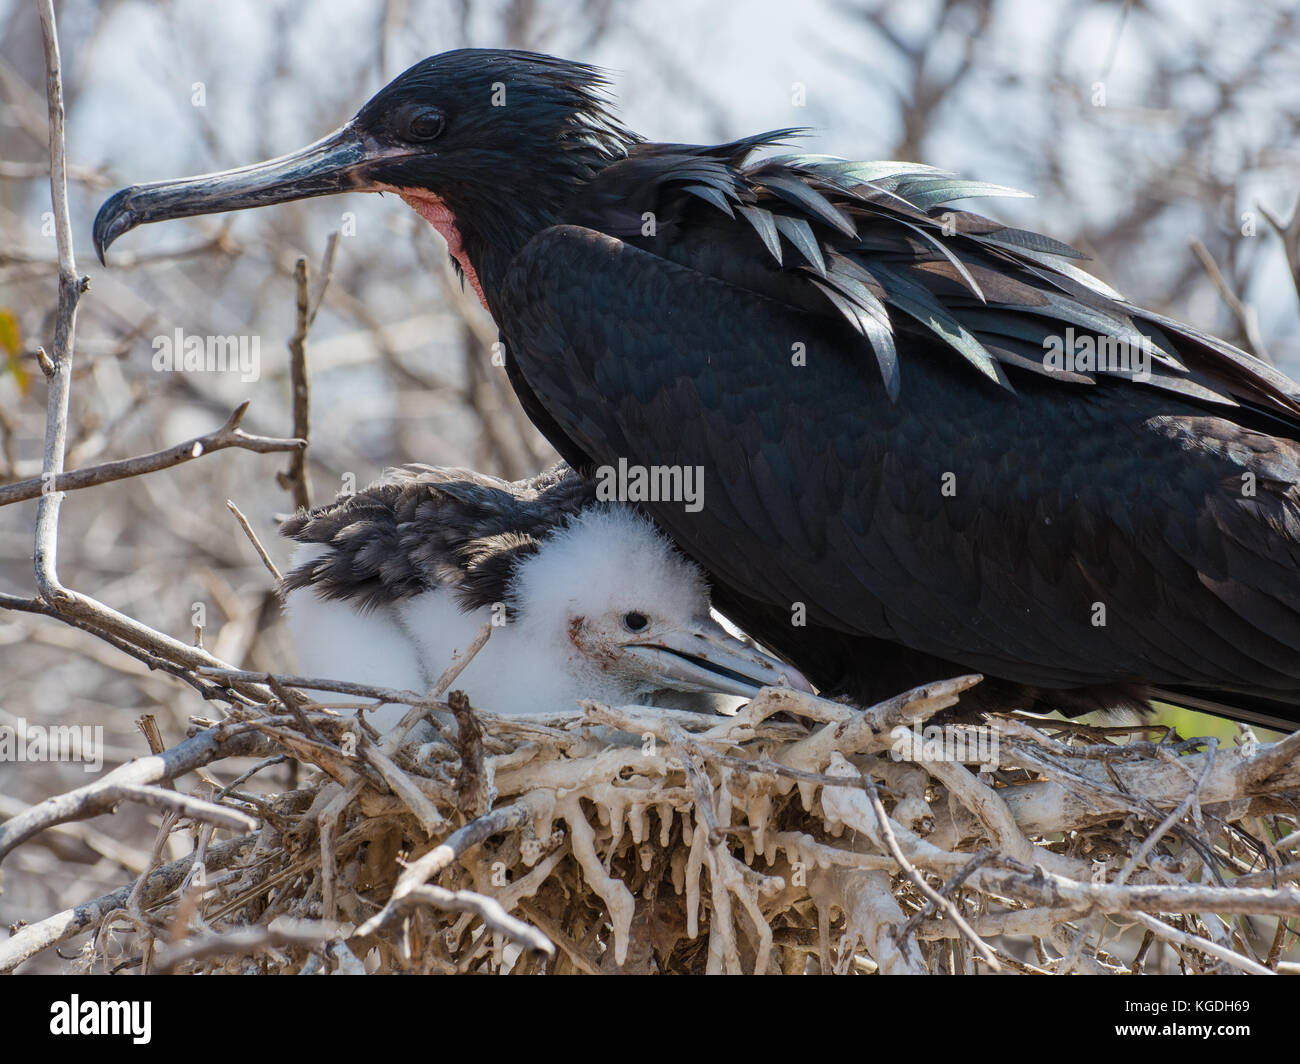 Un macho de fragatas magníficas en su nido con su hija, que depende totalmente de los cuidados de sus padres para sobrevivir. Foto de stock